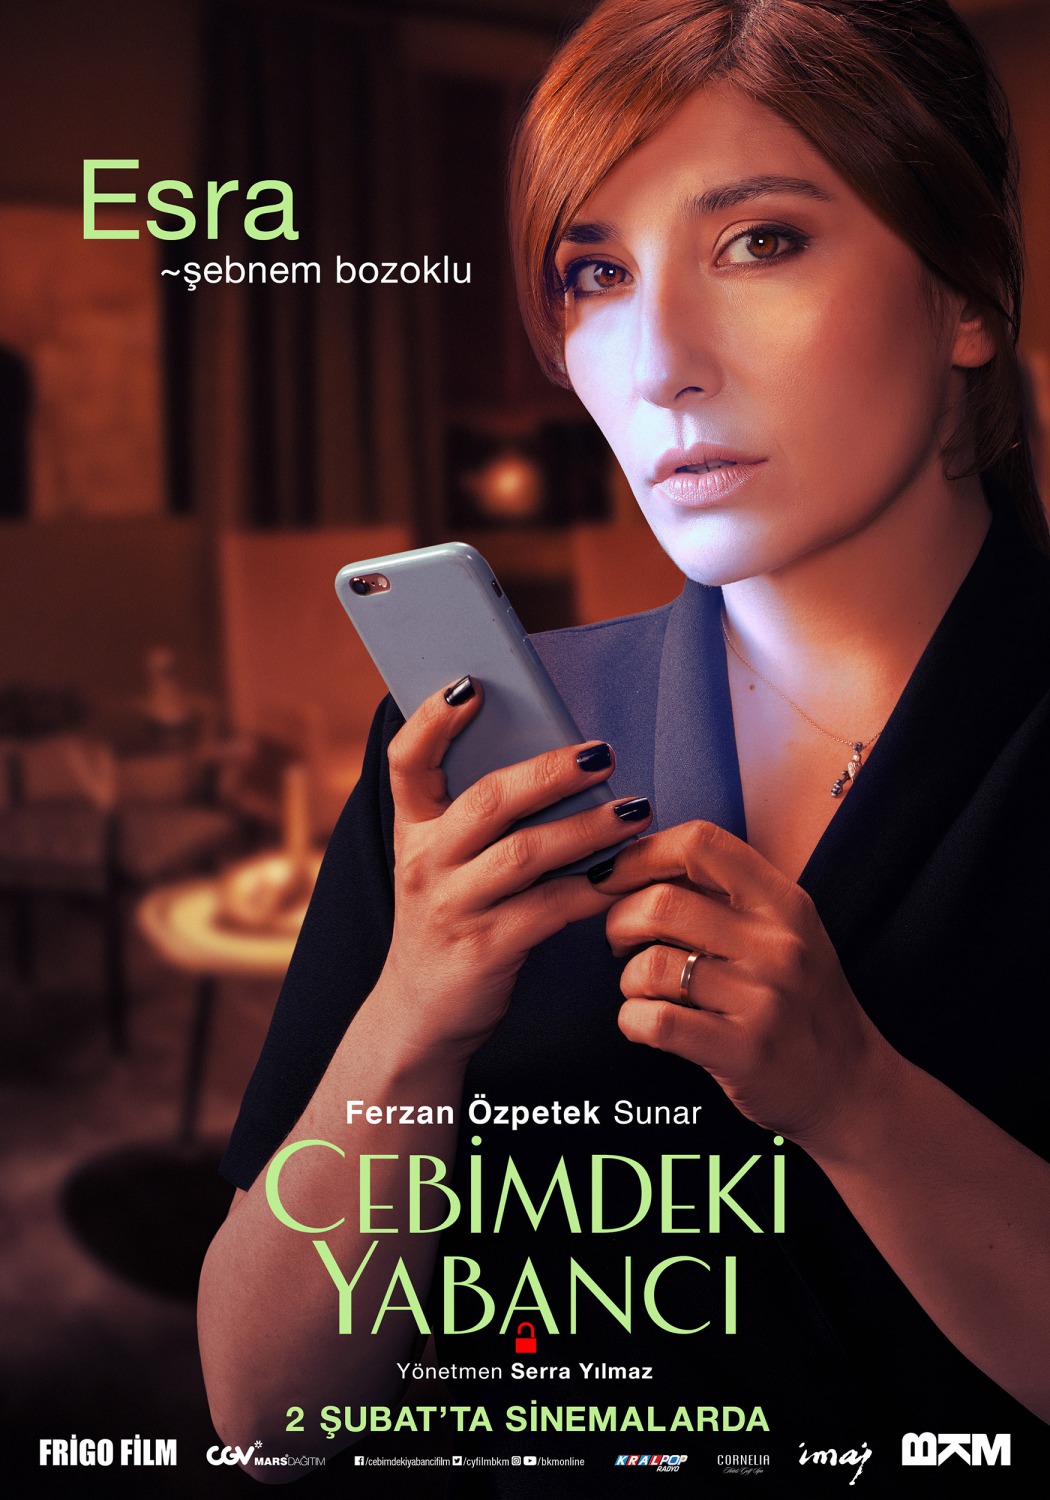 Extra Large Movie Poster Image for Cebimdeki Yabancı (#6 of 10)